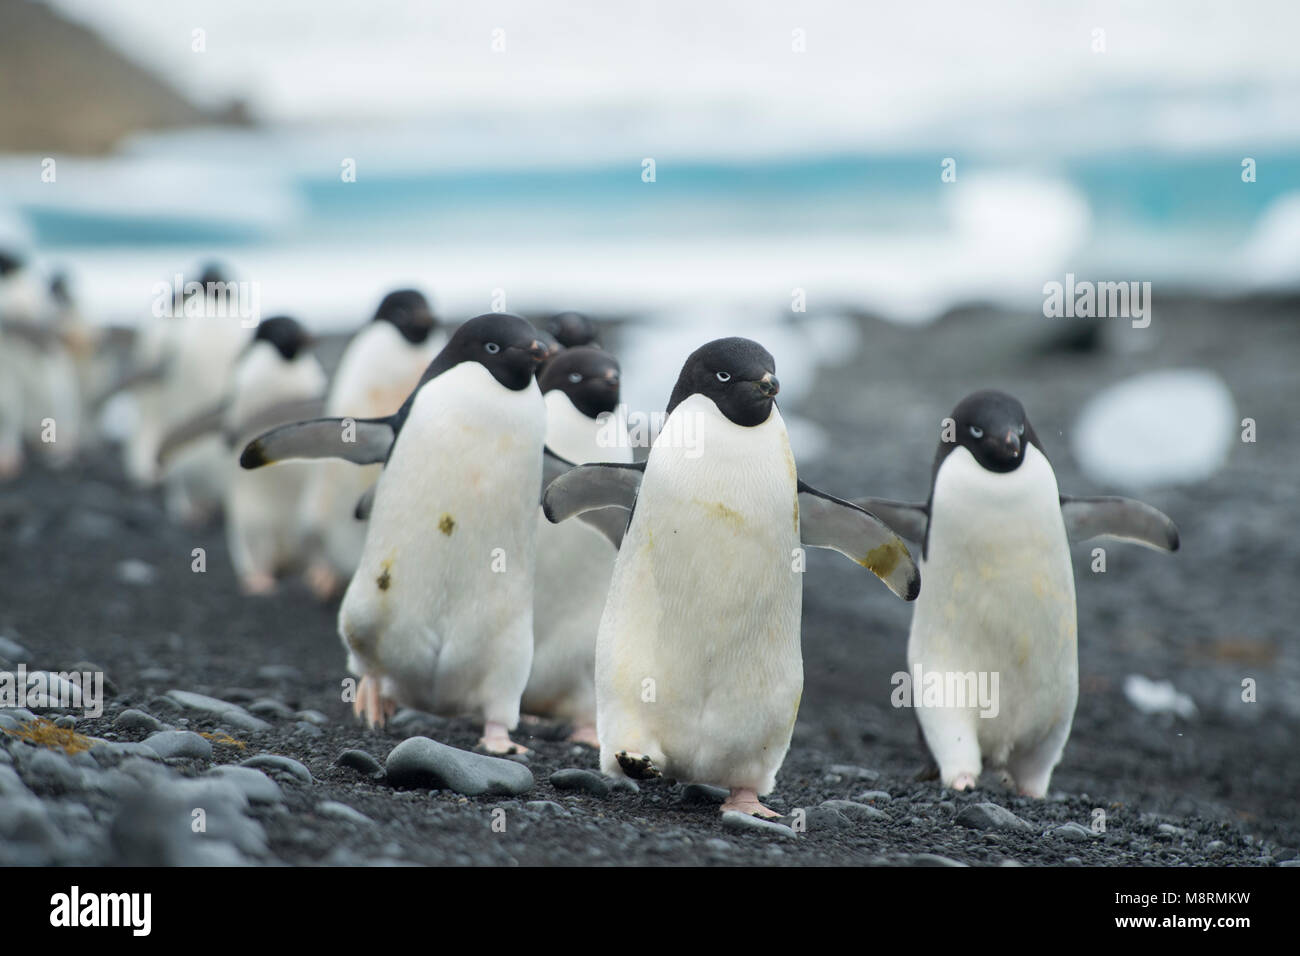 Grupos de pingüinos Adelia que caminar a lo largo de la costa en Brown Bluff, en la Antártida. Foto de stock